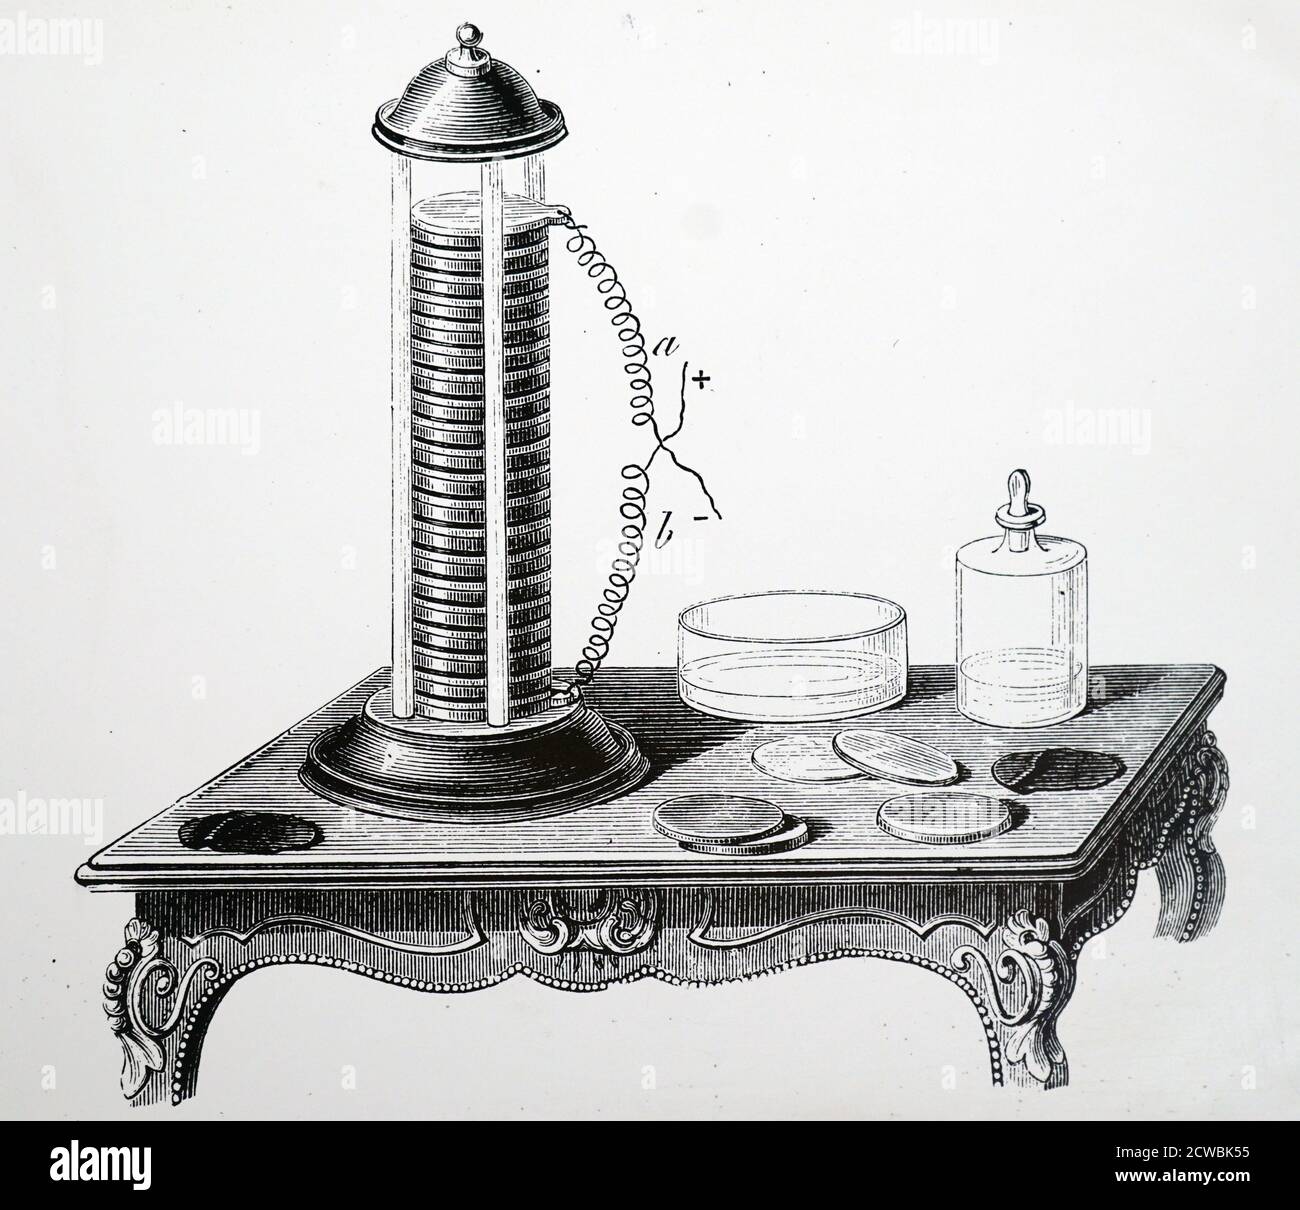 Grabado que representa la pila de Alessandro Volta: La primera batería eléctrica compuesta de discos de zinc, cobre, tela humedecida con ácido, zinc, etc. Foto de stock